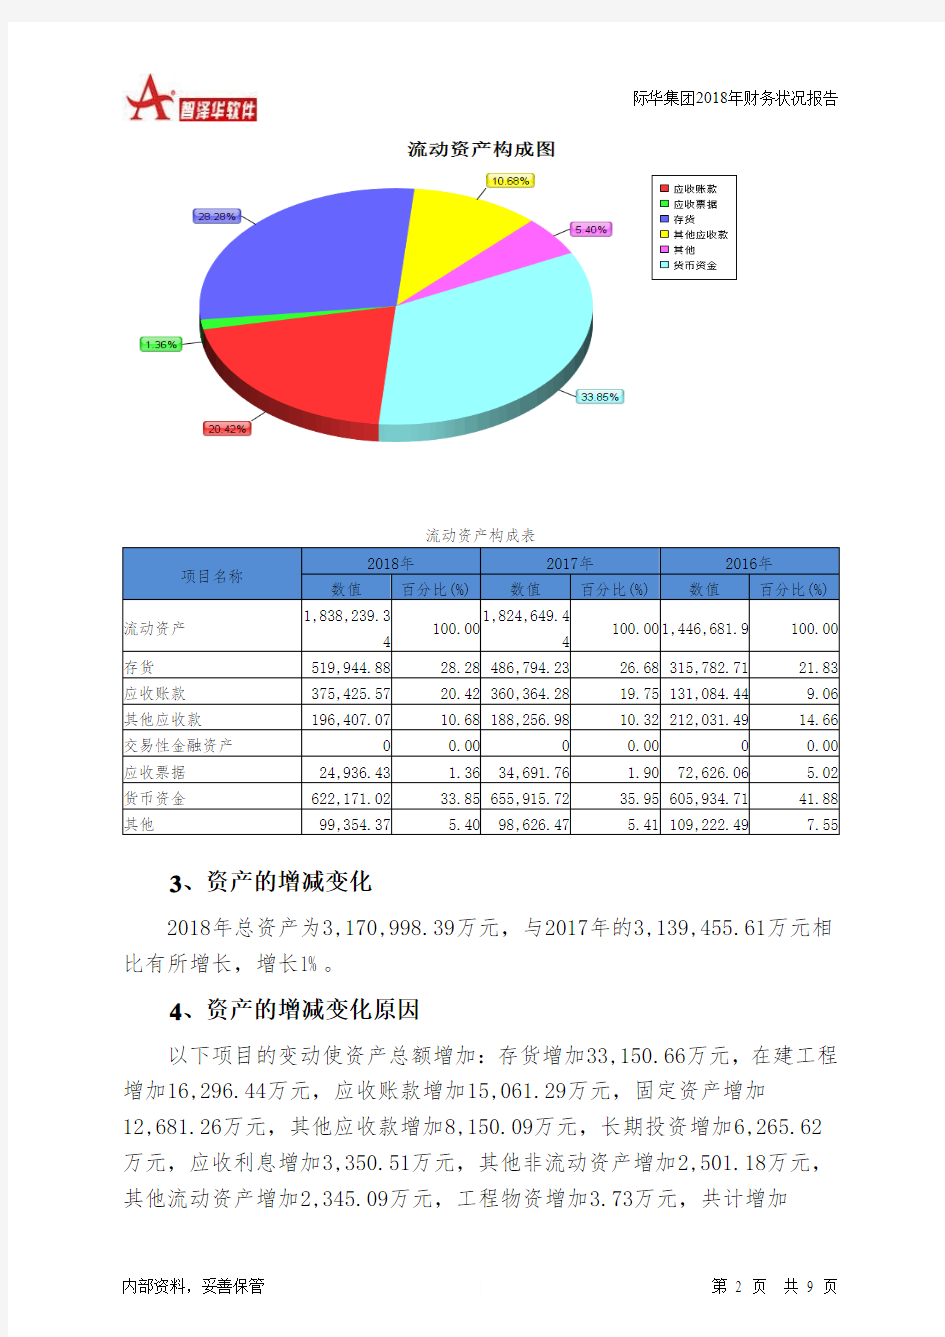 际华集团2018年财务状况报告-智泽华